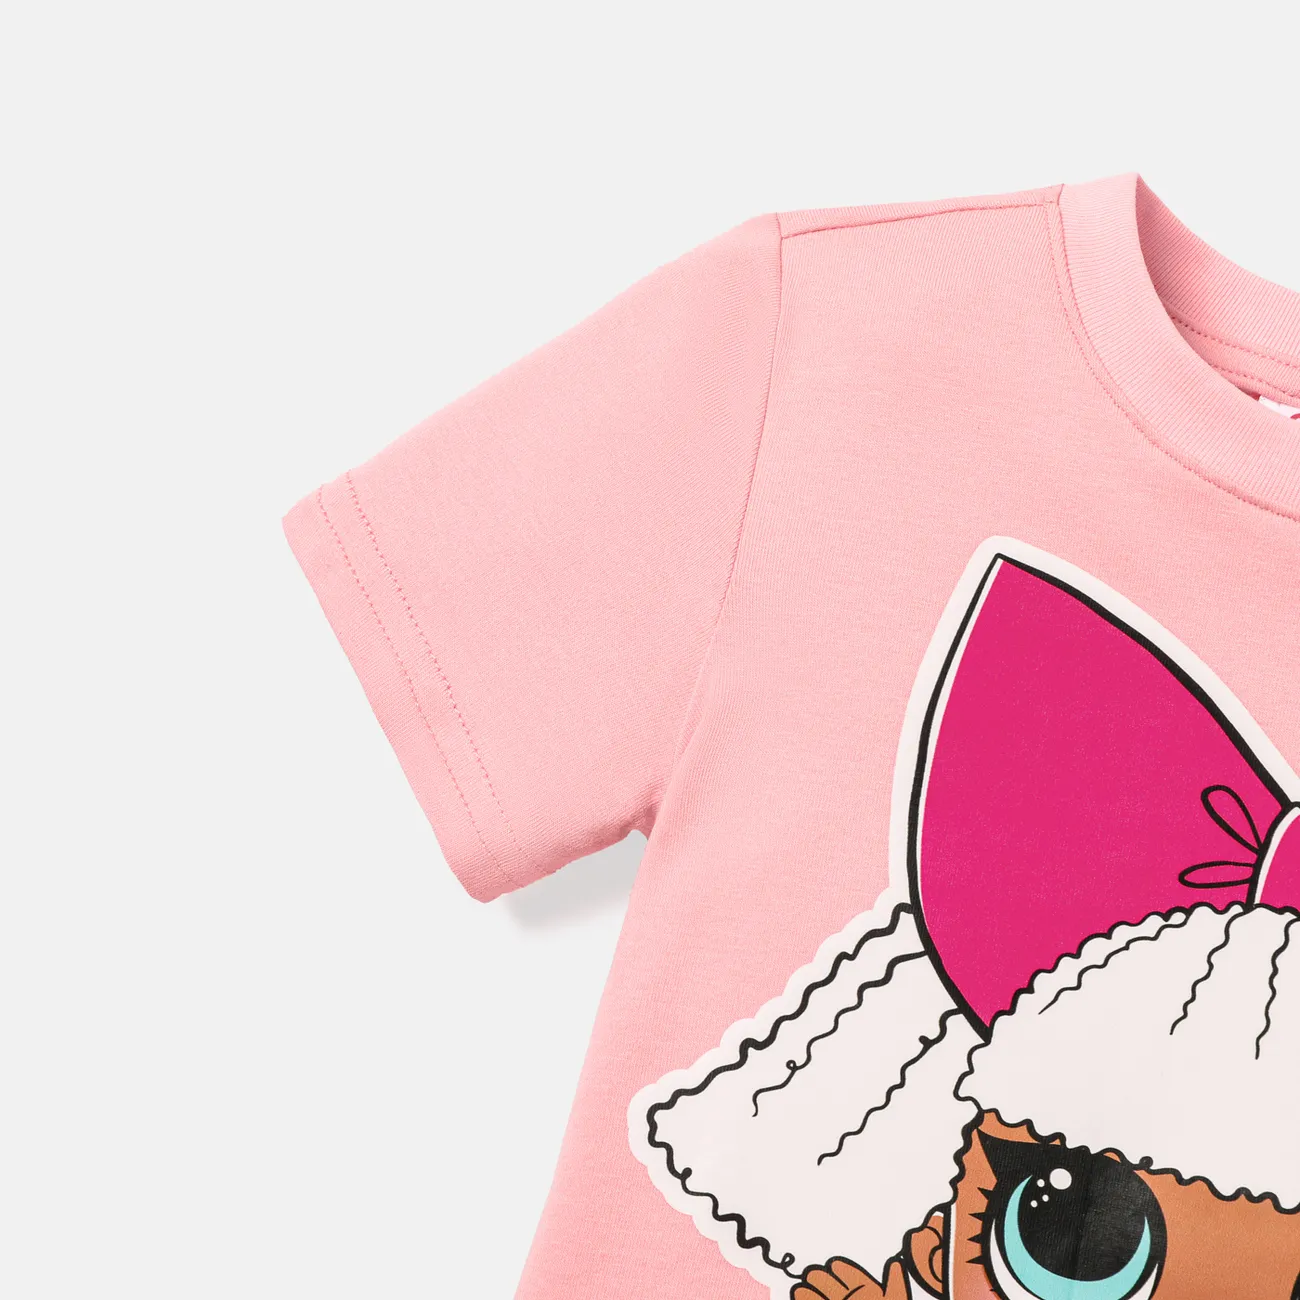 Lol. Überraschung! Kurzarm-Baumwoll-T-Shirt mit Charakterdruck für Kleinkinder/Kindermädchen rosa big image 1